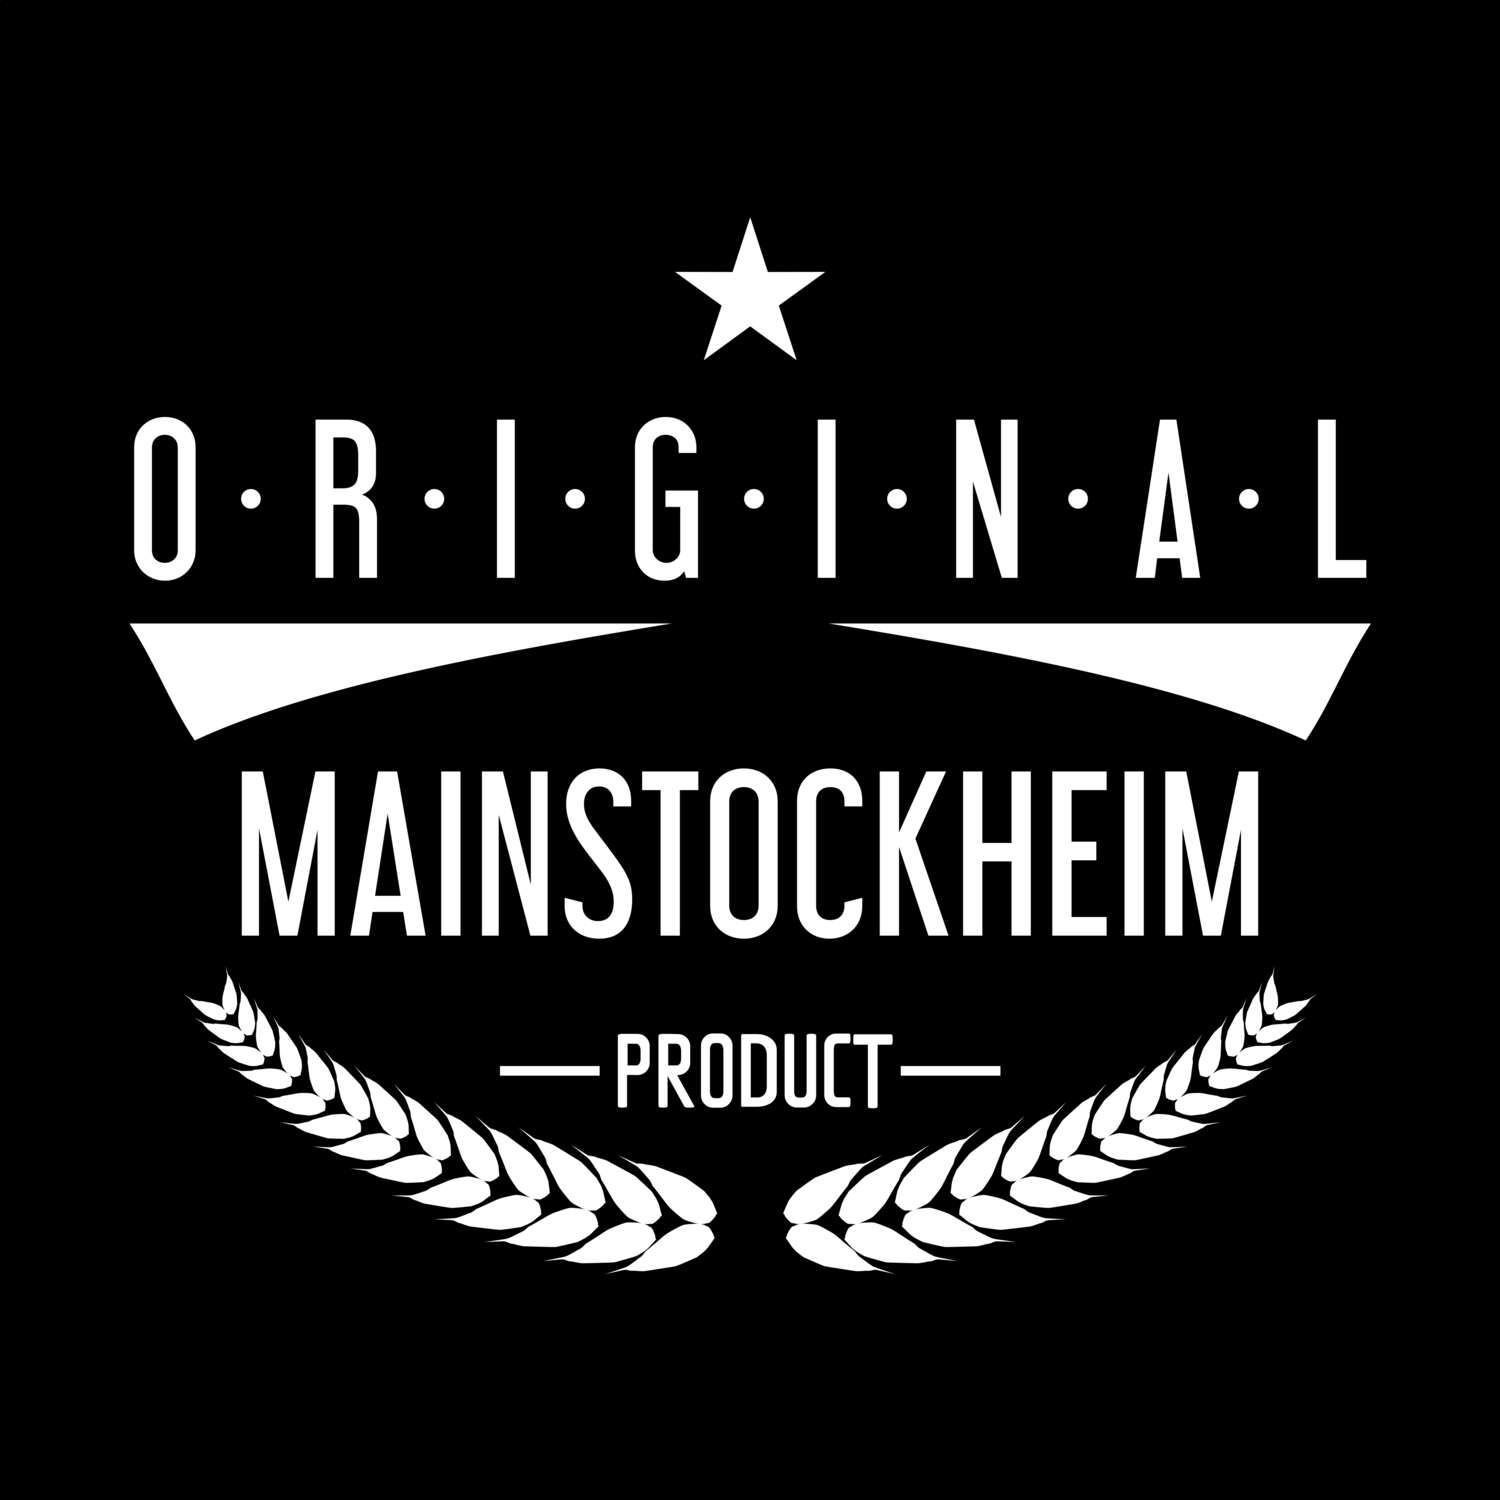 Mainstockheim T-Shirt »Original Product«